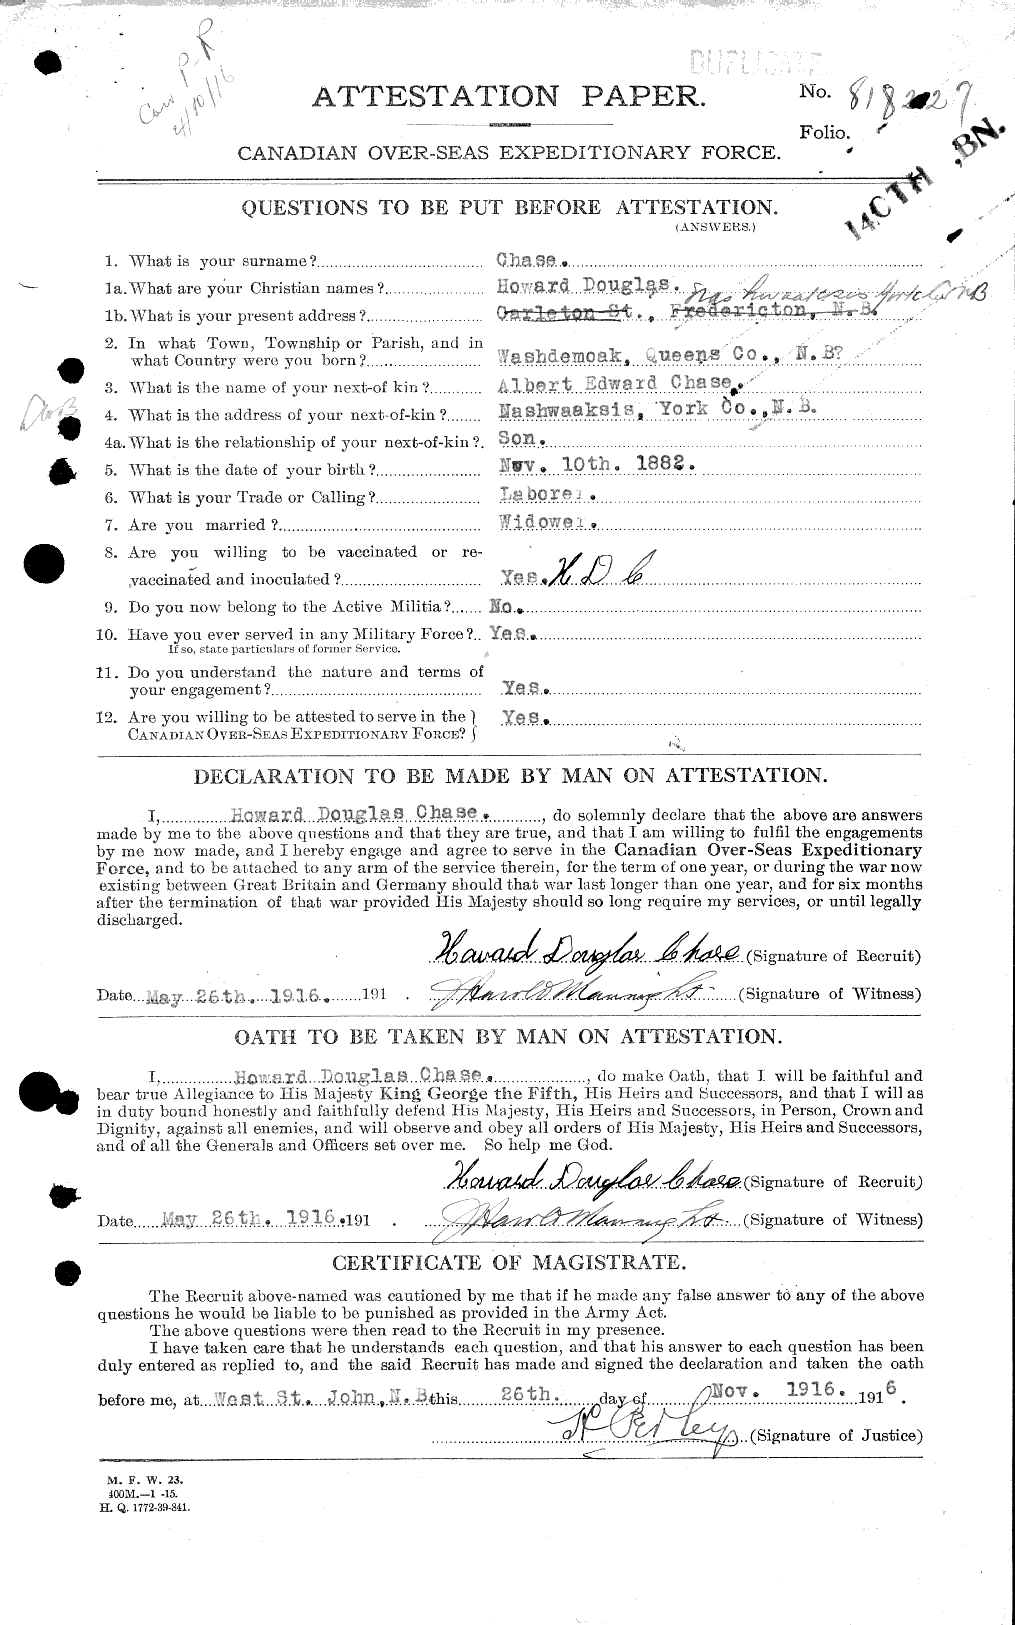 Dossiers du Personnel de la Première Guerre mondiale - CEC 016021a